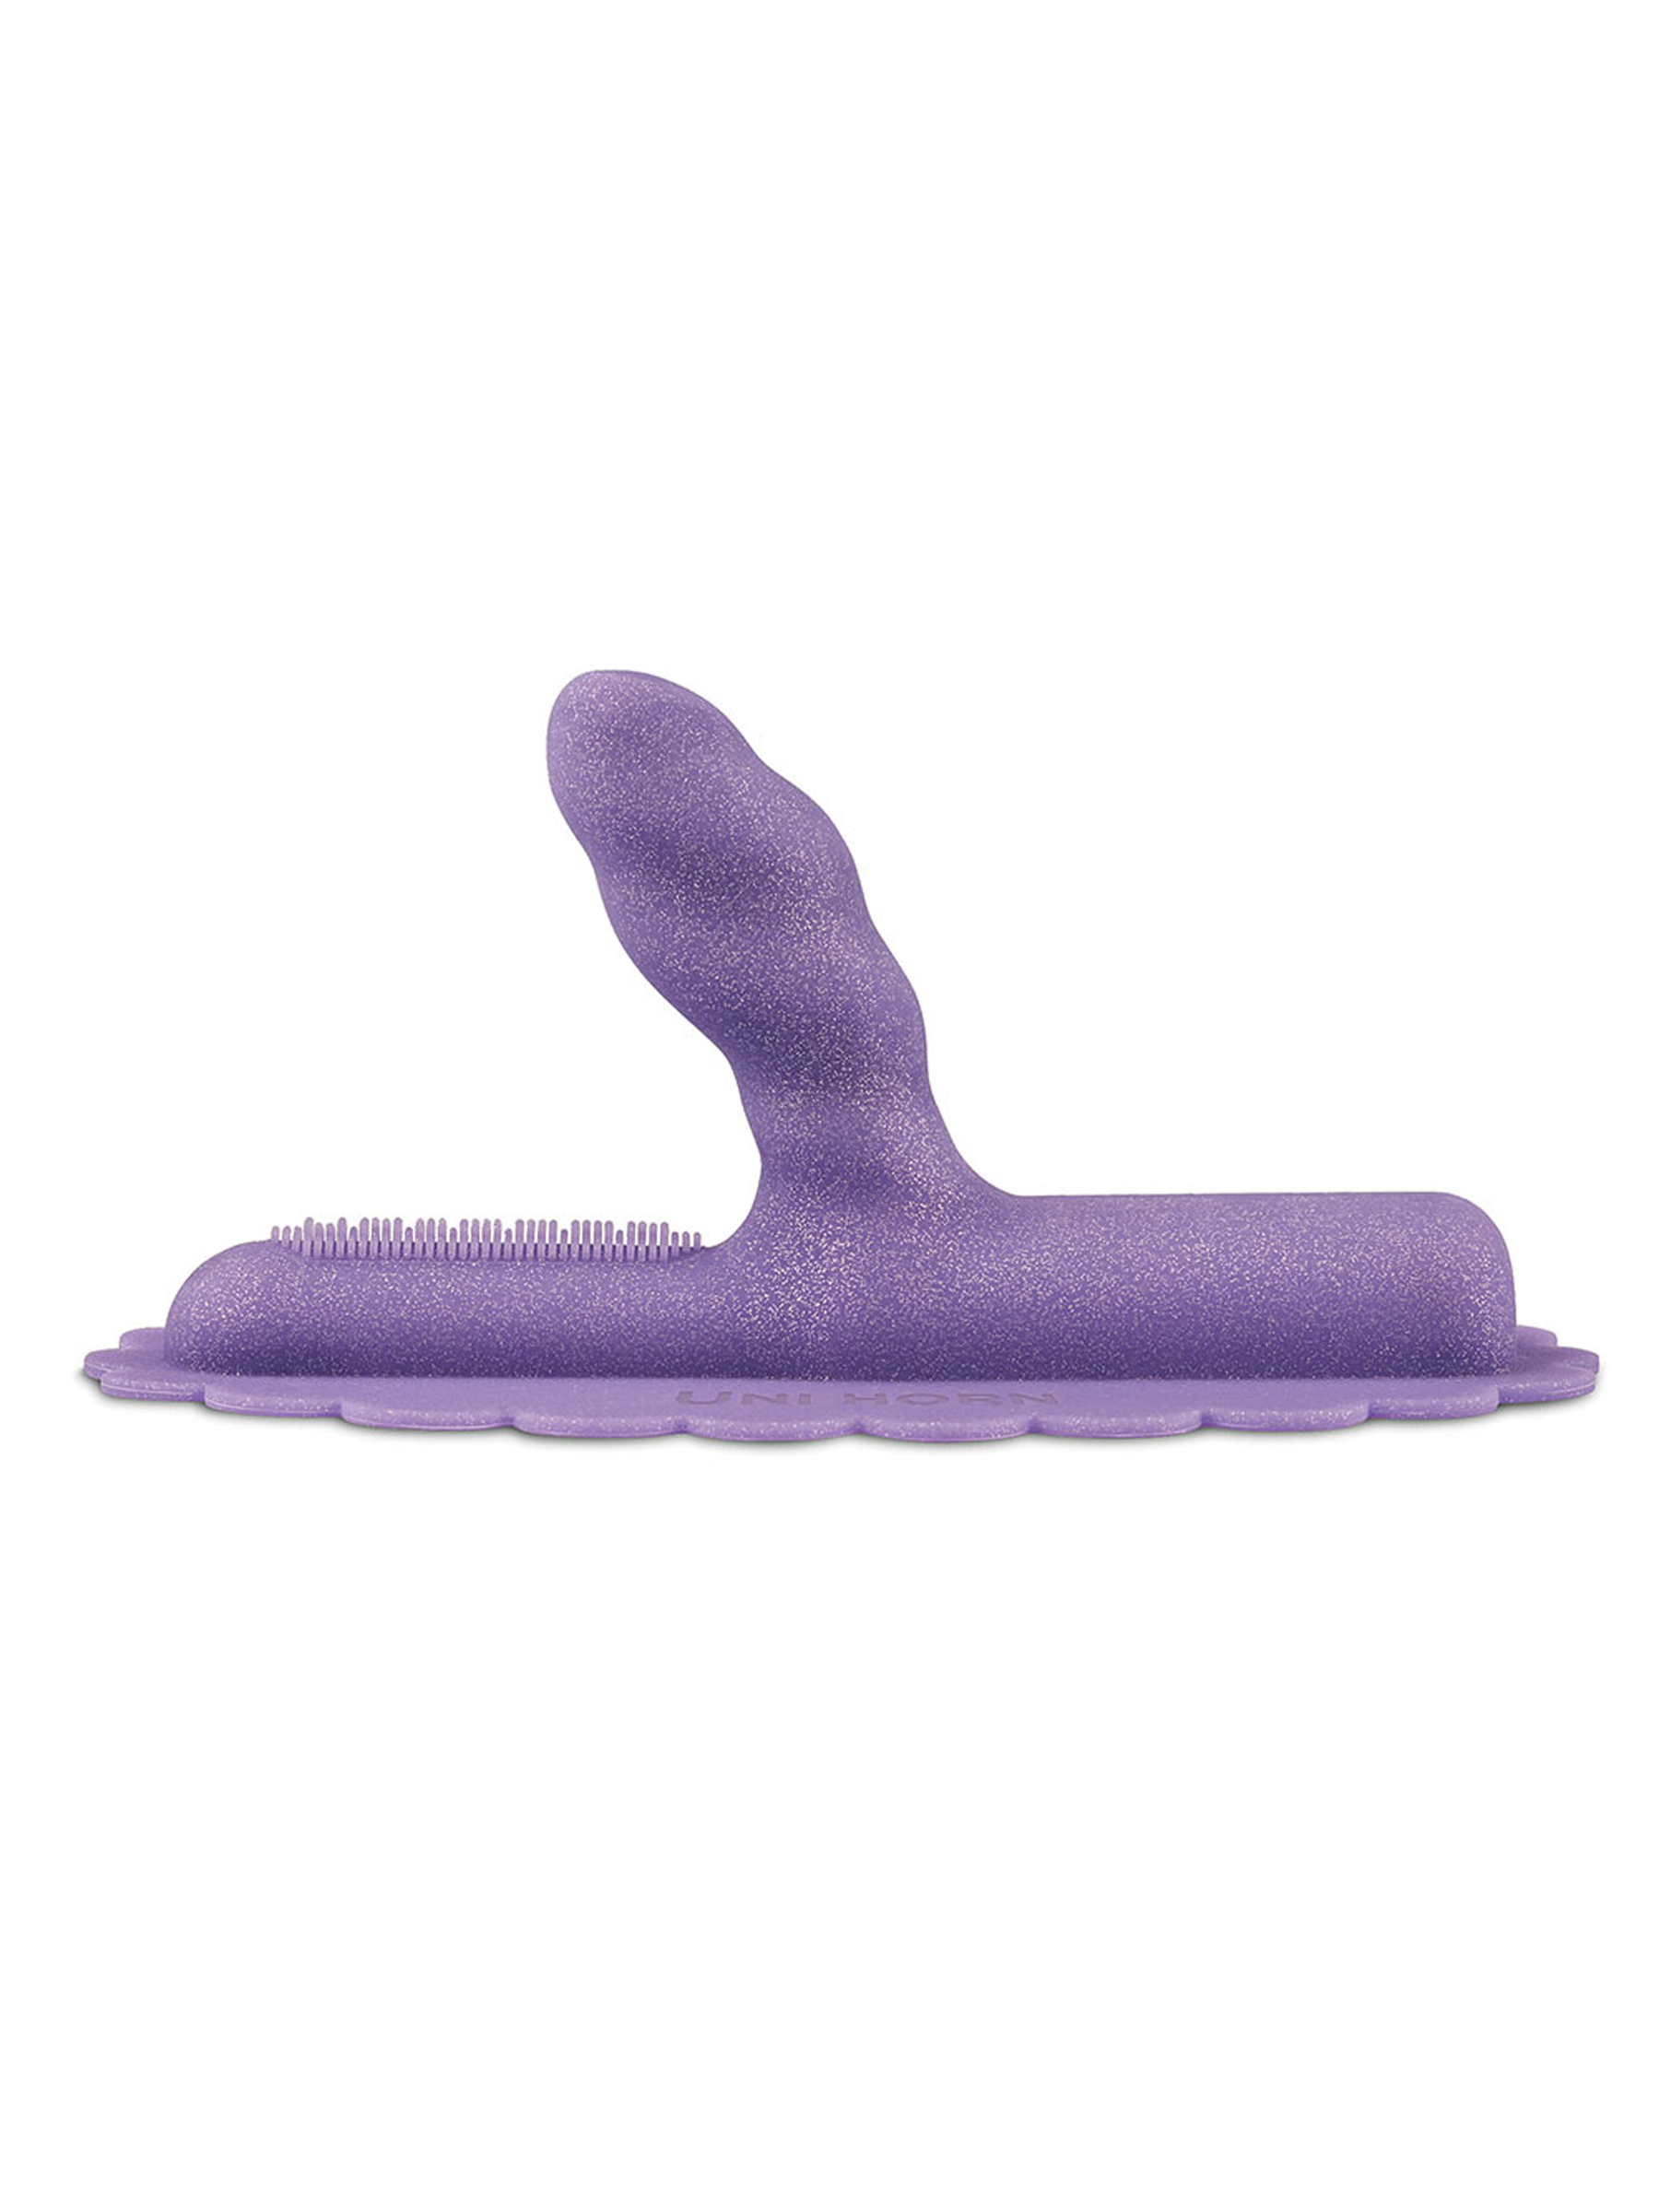 Unihorn silicone attachment for sex machine